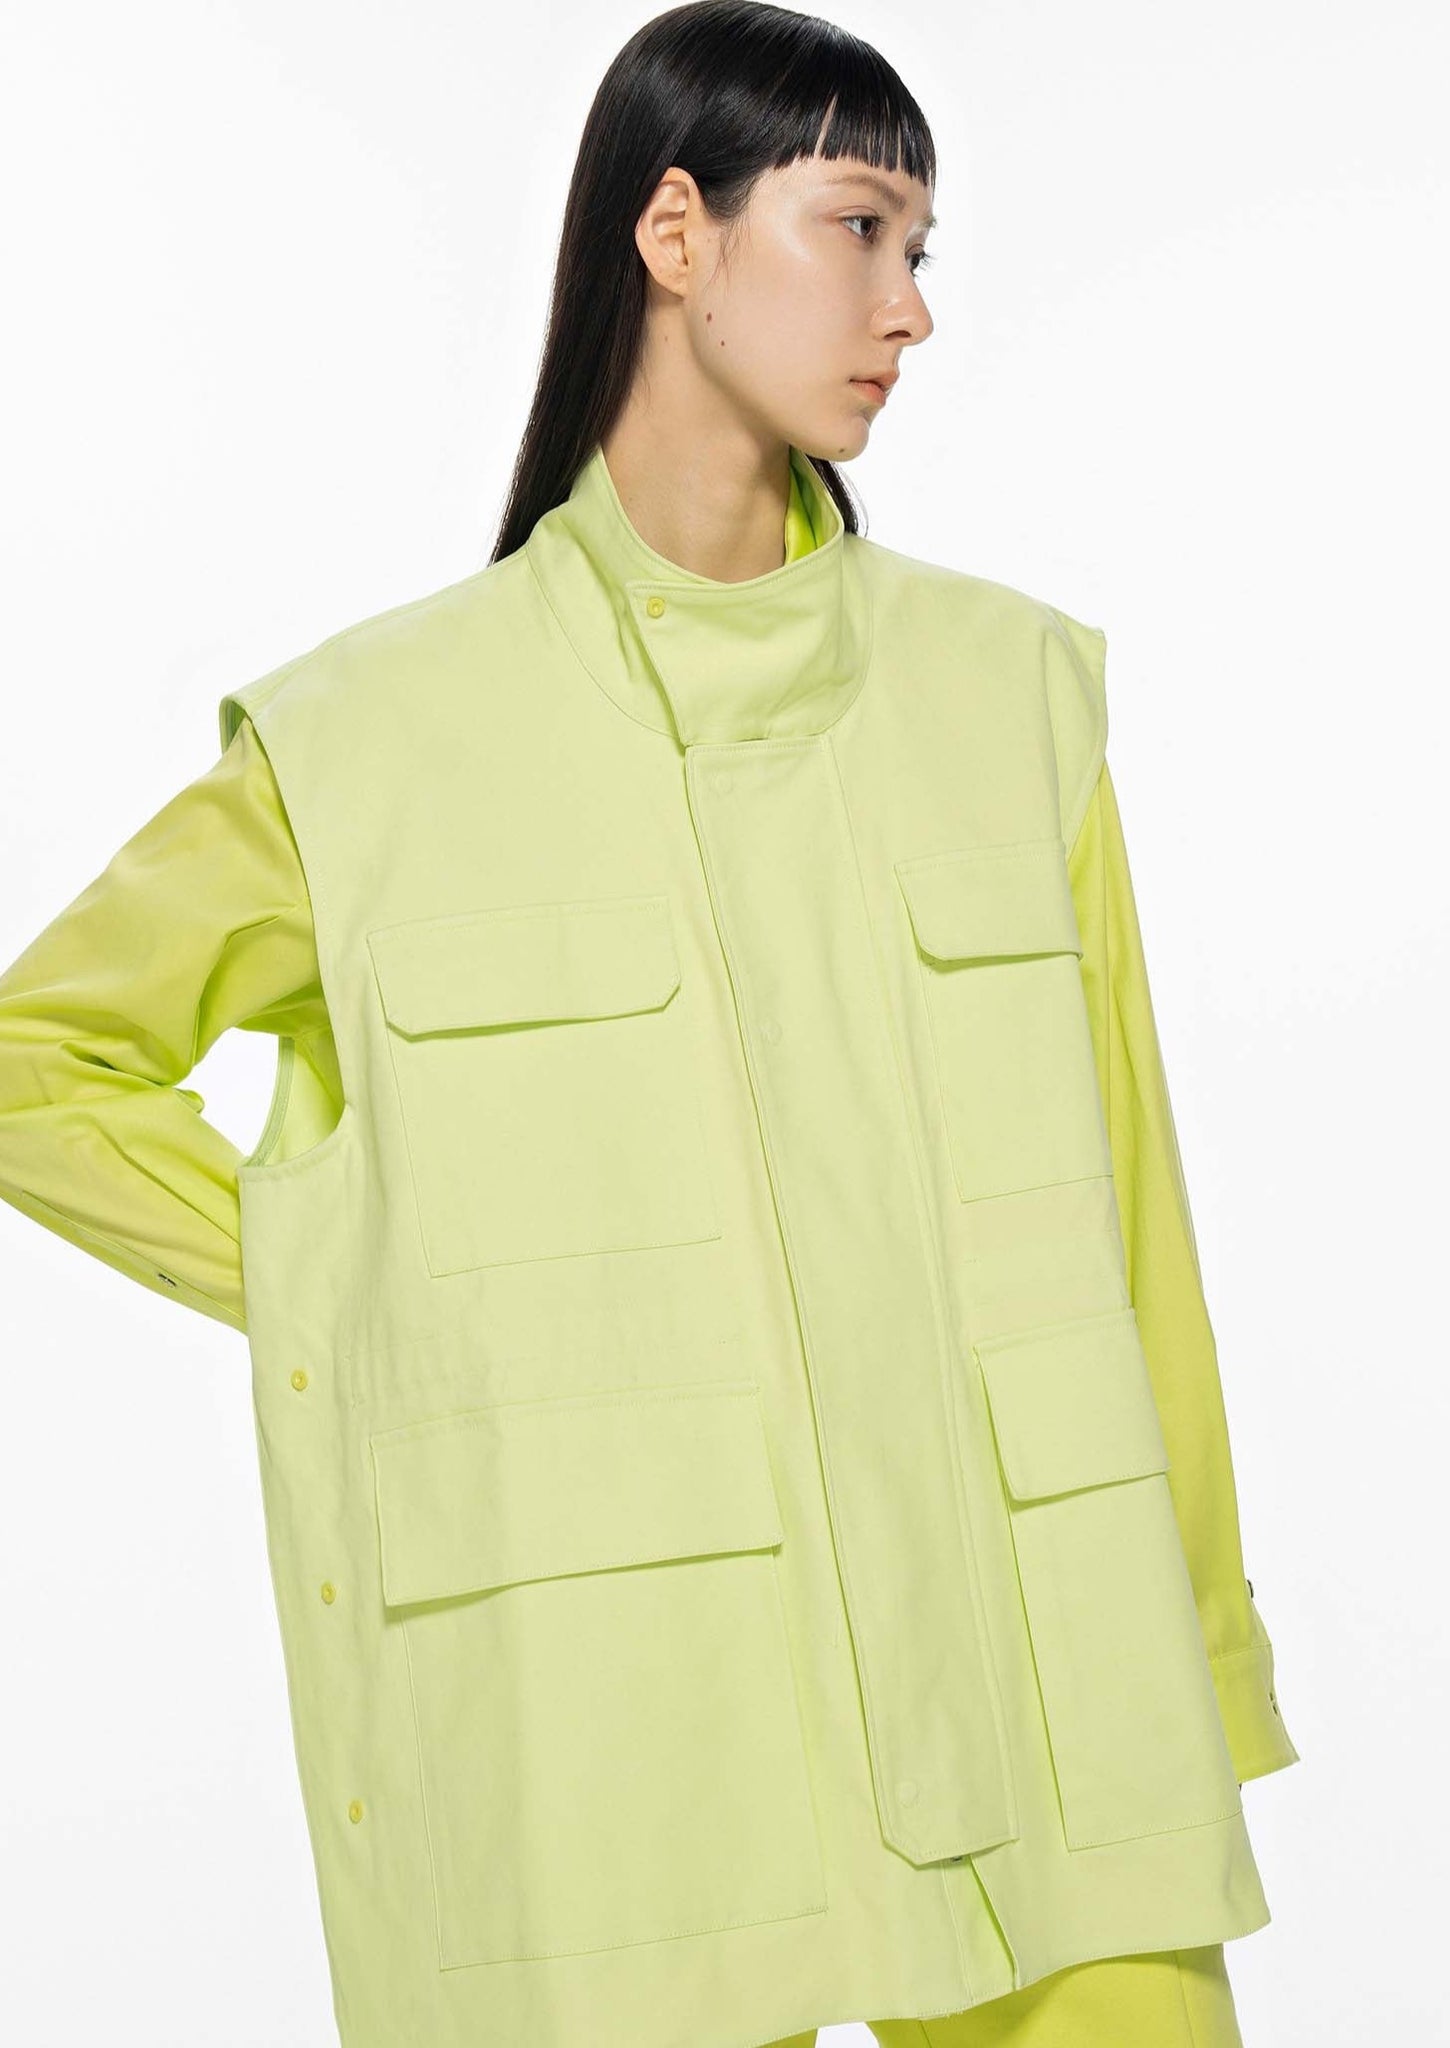 Sleeveless Neon Utility Vest